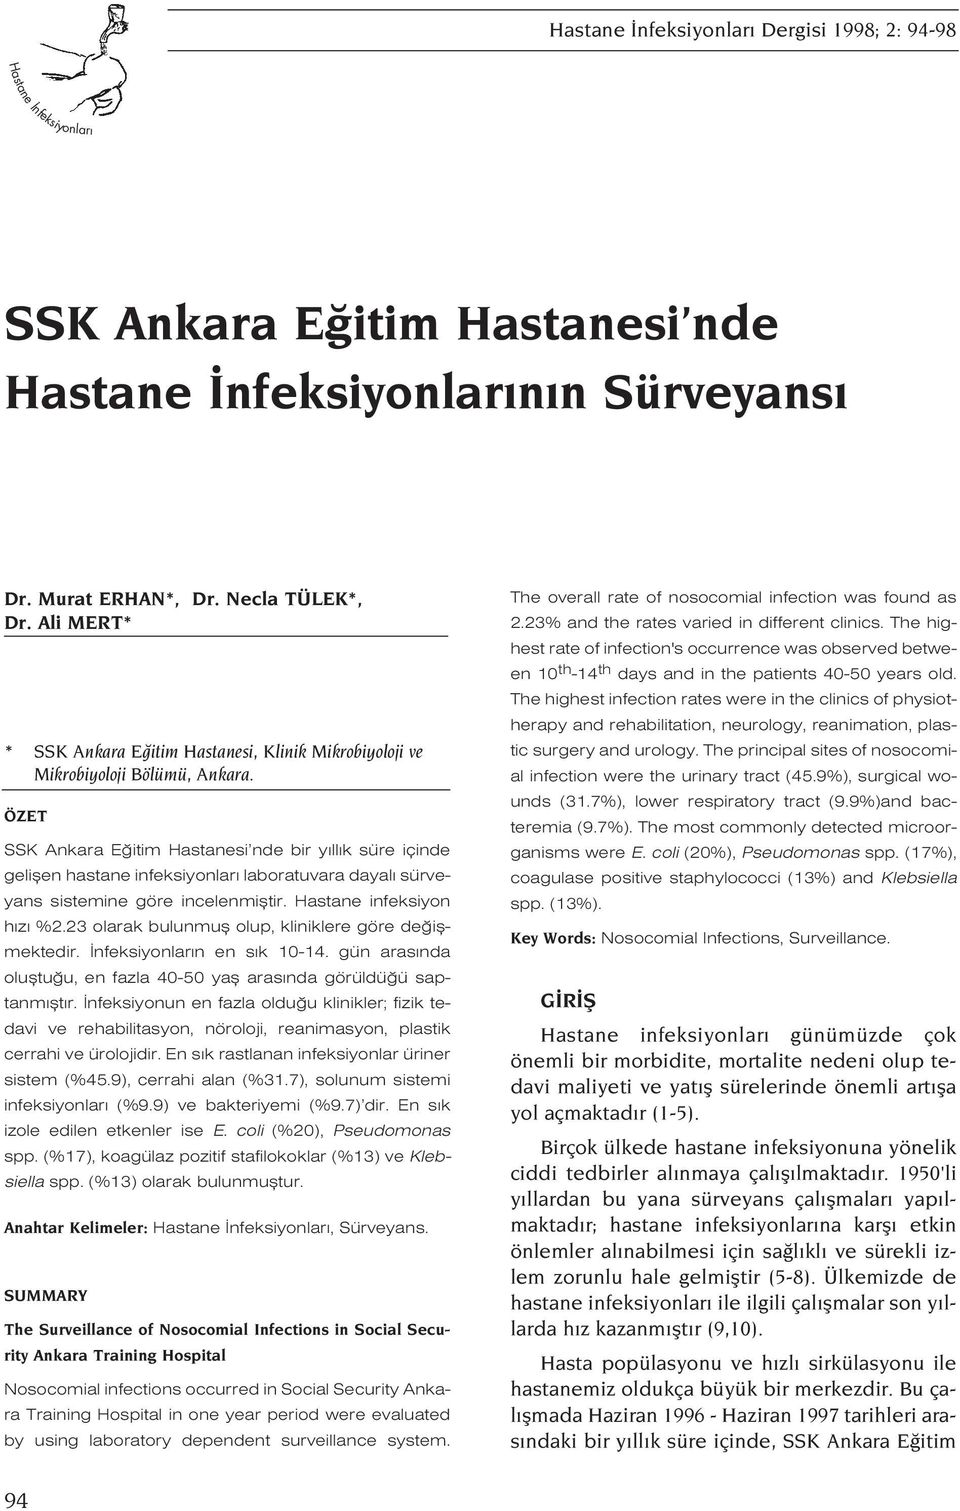 ÖZET SSK Ankara E itim Hastanesi nde bir y ll k süre içinde geliflen hastane infeksiyonlar laboratuvara dayal sürveyans sistemine göre incelenmifltir. Hastane infeksiyon h z %2.